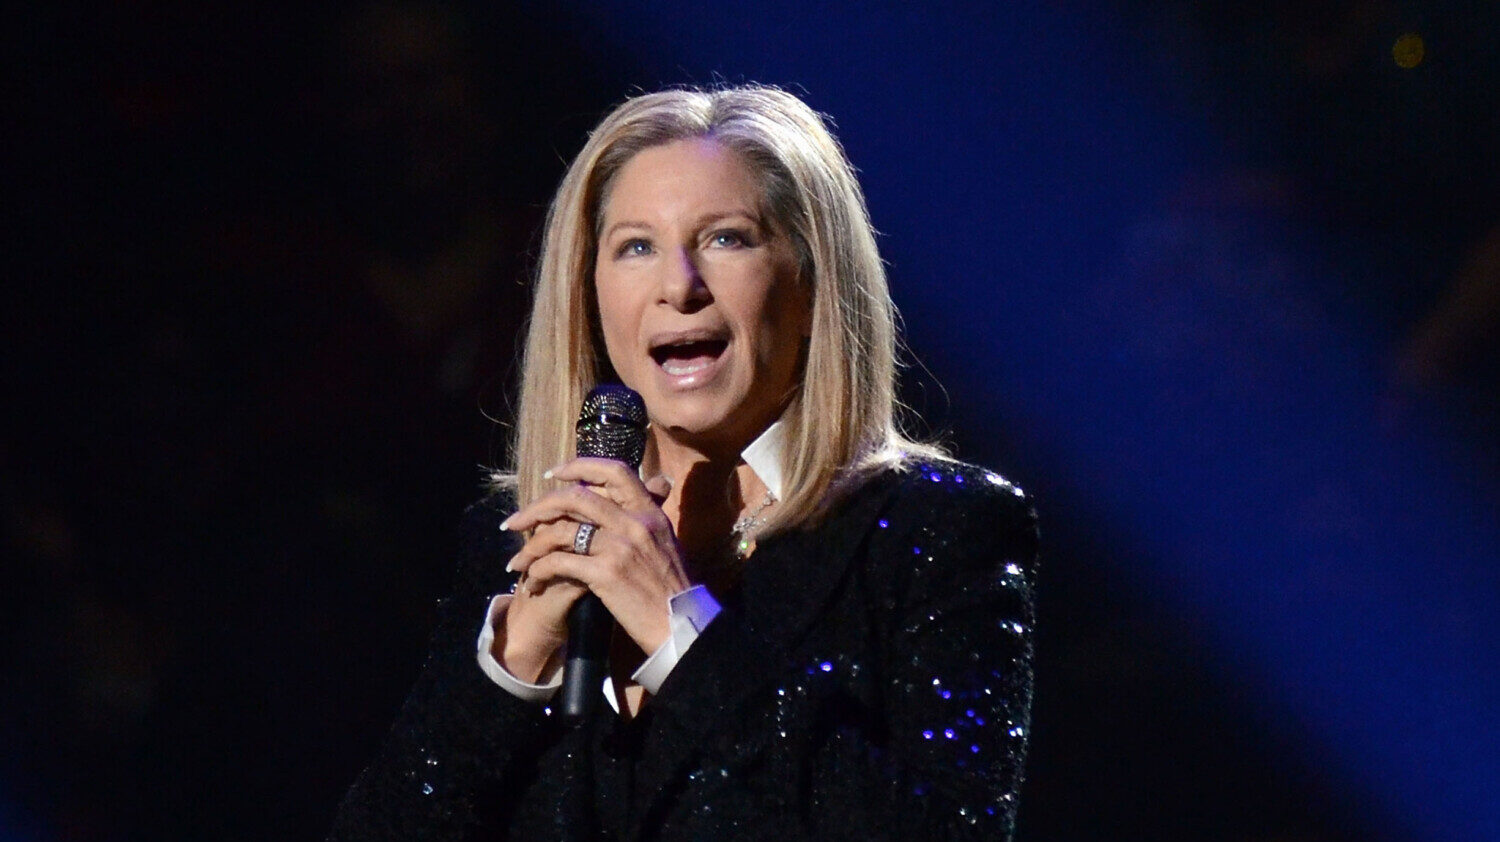 Barbra Streisand in 2012